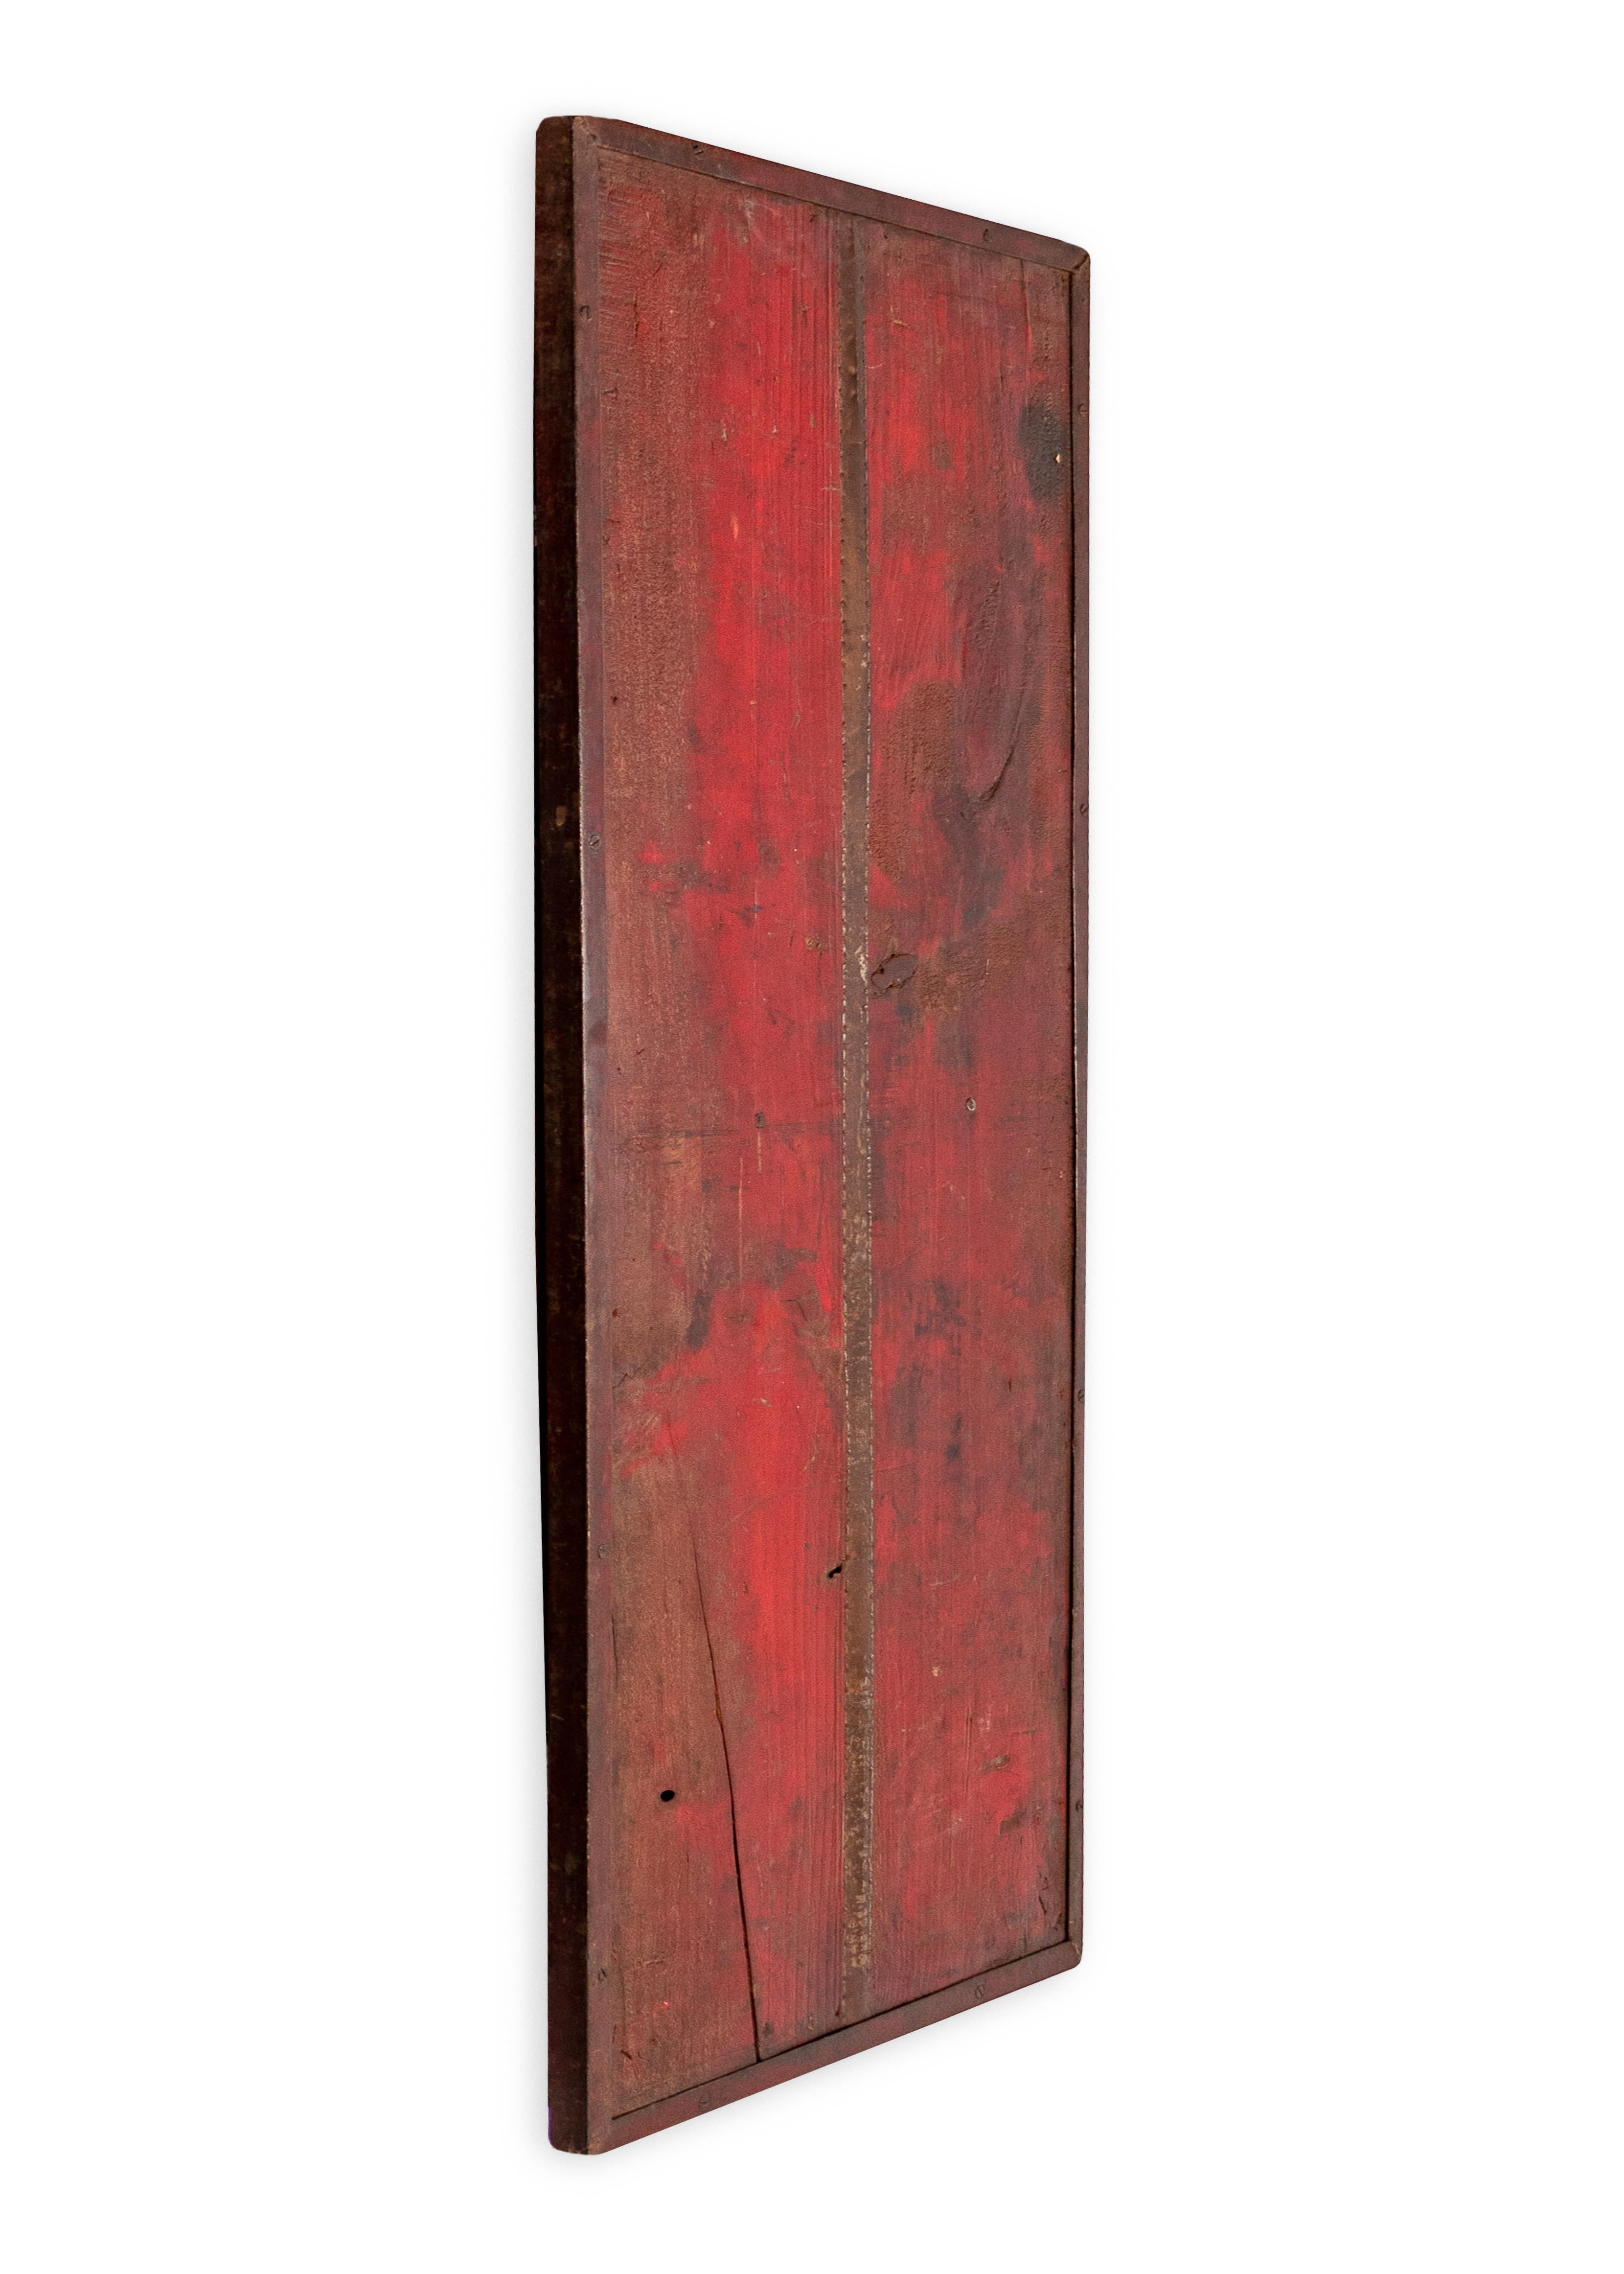 Panneau mural en bois rouge multi-tons avec des éléments métalliques récupérés. Dans mon esthétique organique, contemporaine, vintage et moderne du milieu du siècle.

Cette pièce fait partie de la collection unique de Brendan Bass, Le Monde. La